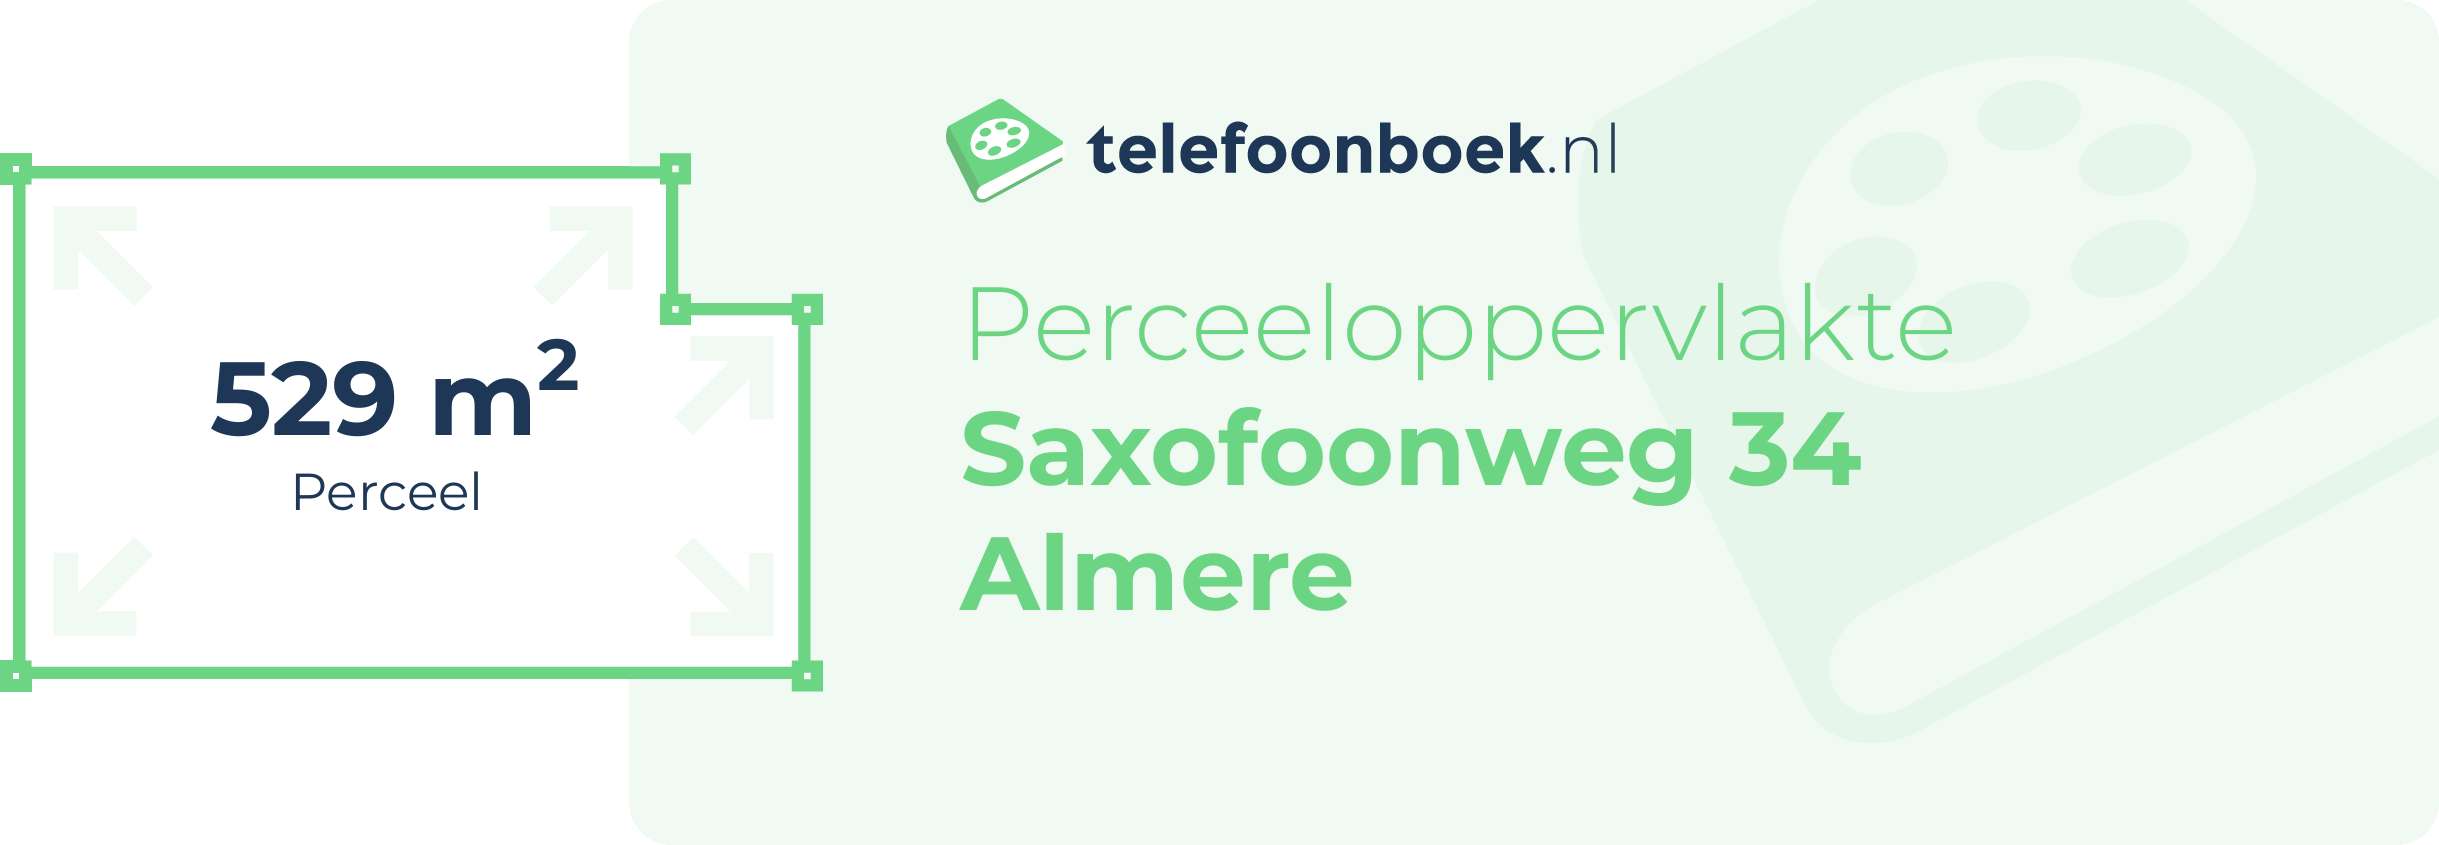 Perceeloppervlakte Saxofoonweg 34 Almere